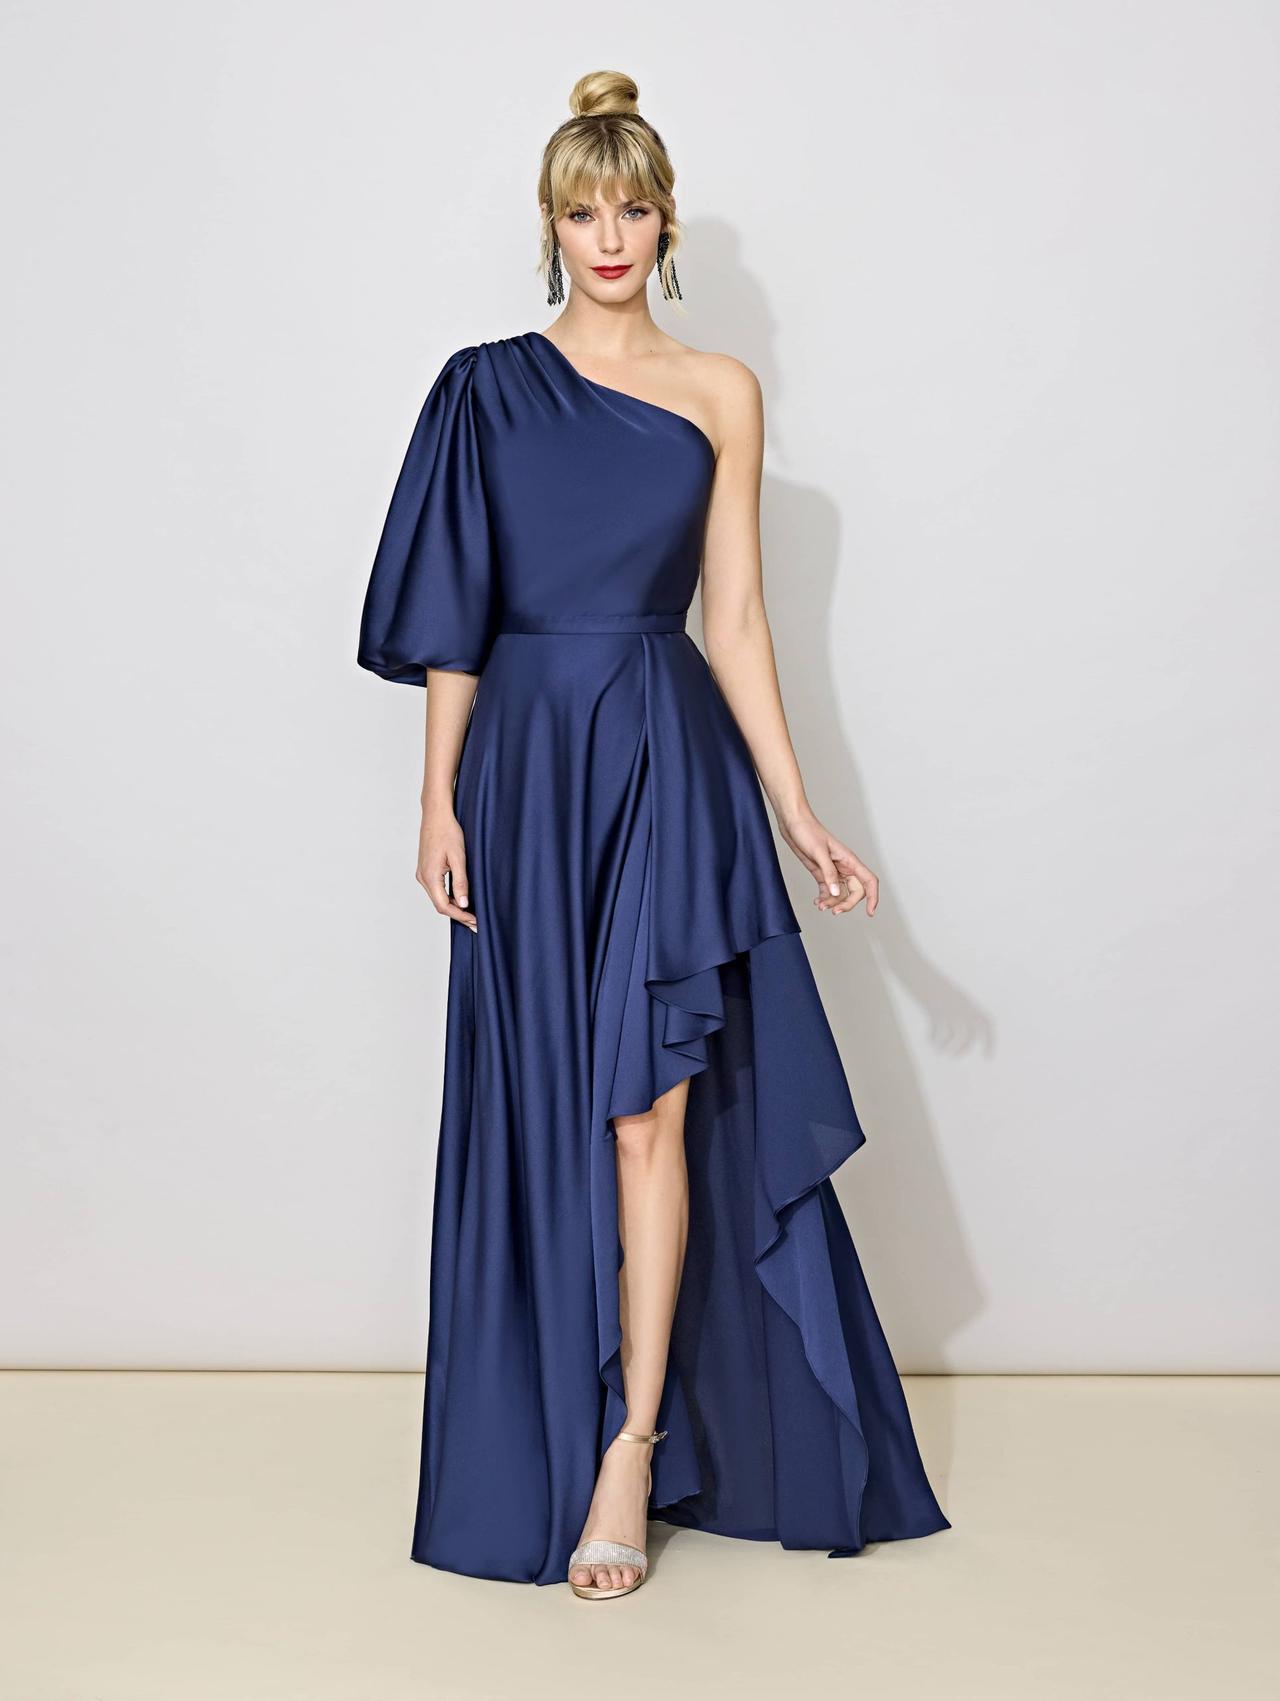 Vestido Largo Azul Noche Para Dama – Gamarra – Ropa de Moda en Perú y  Textiles.